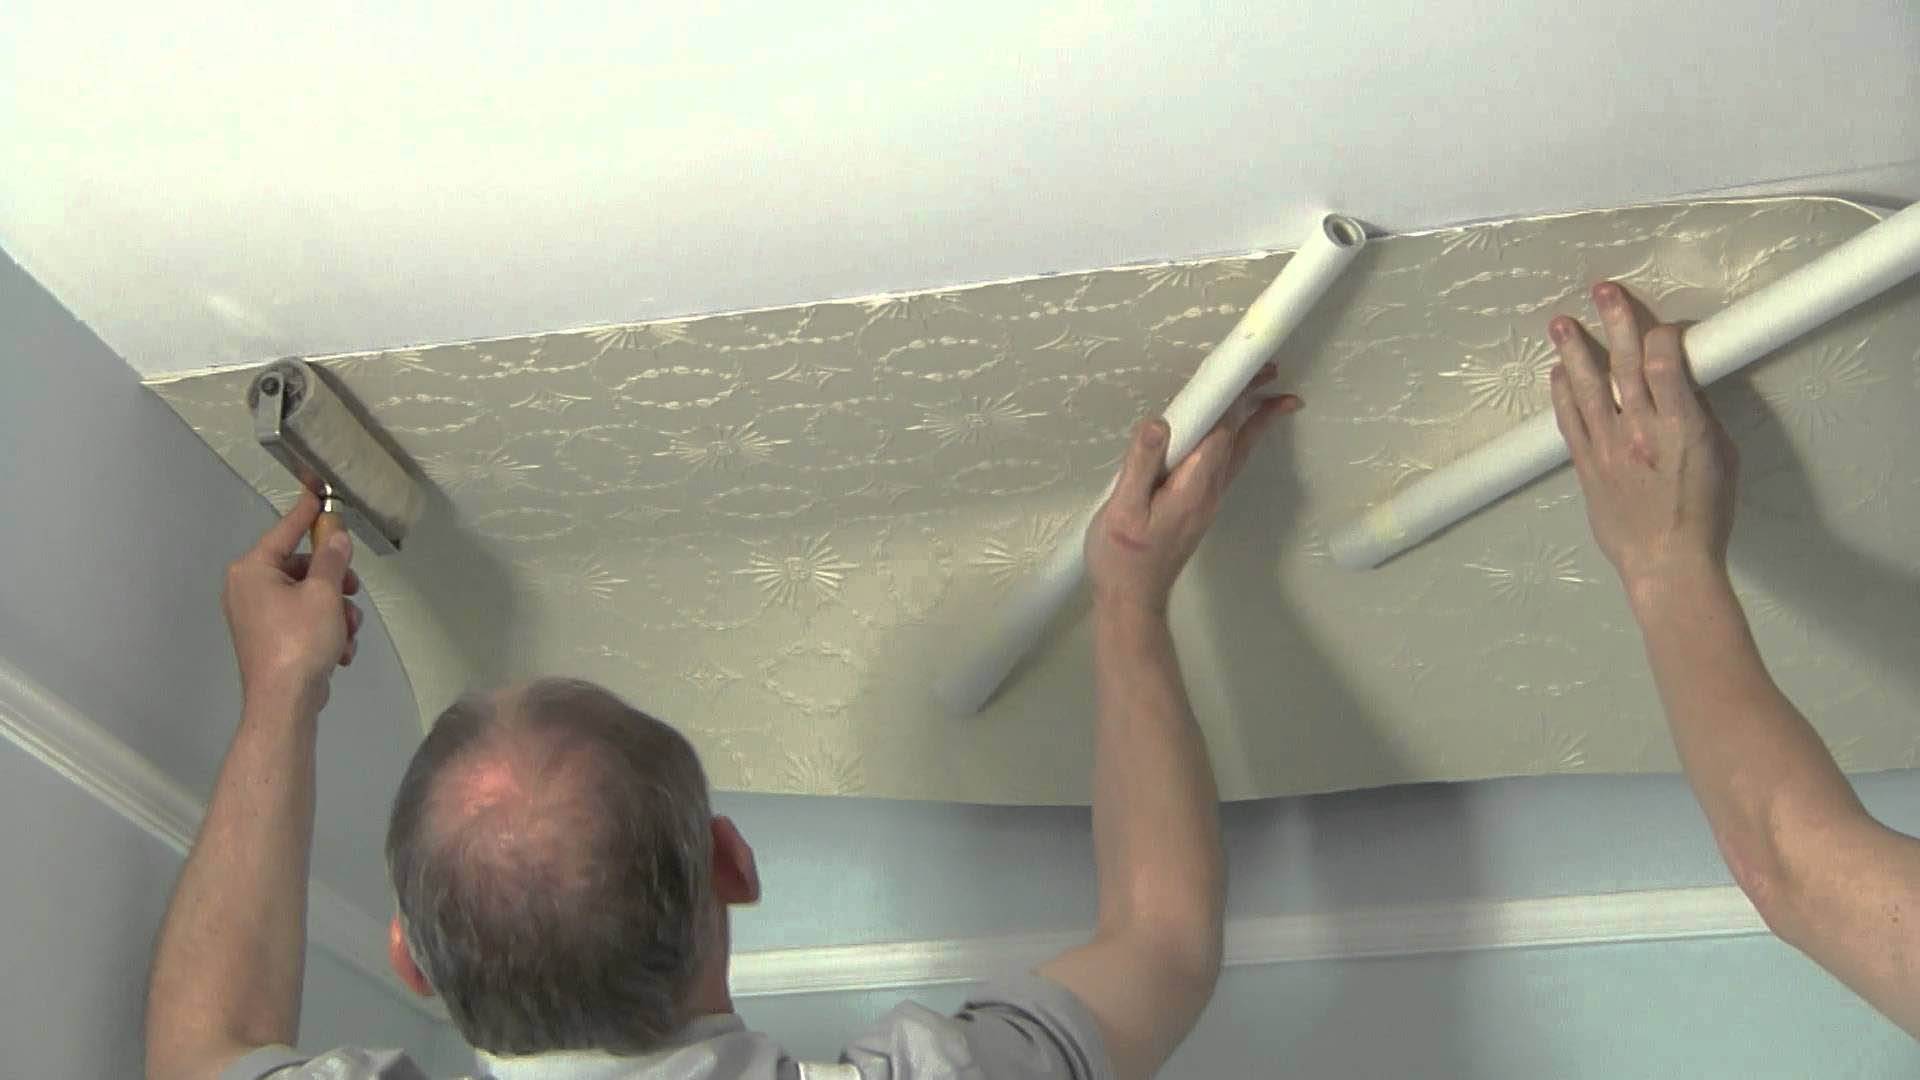 Поклейка обоев на потолок: подготовка, инструкция по работе, особенности, материалы и поверхности